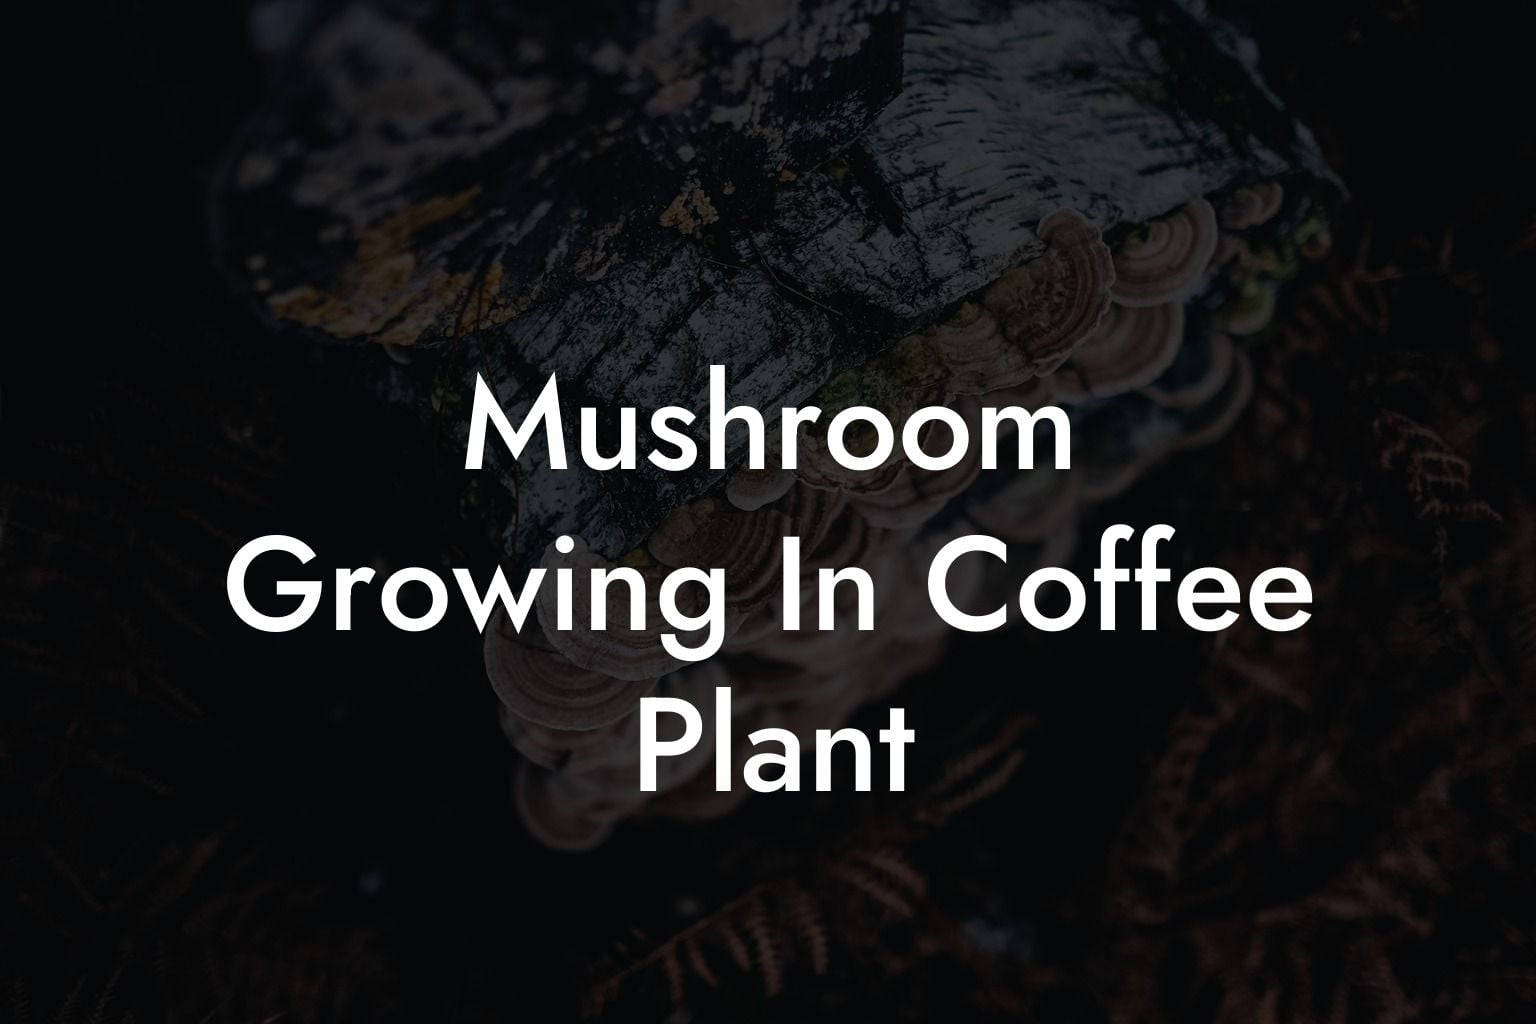 Mushroom Growing In Coffee Plant